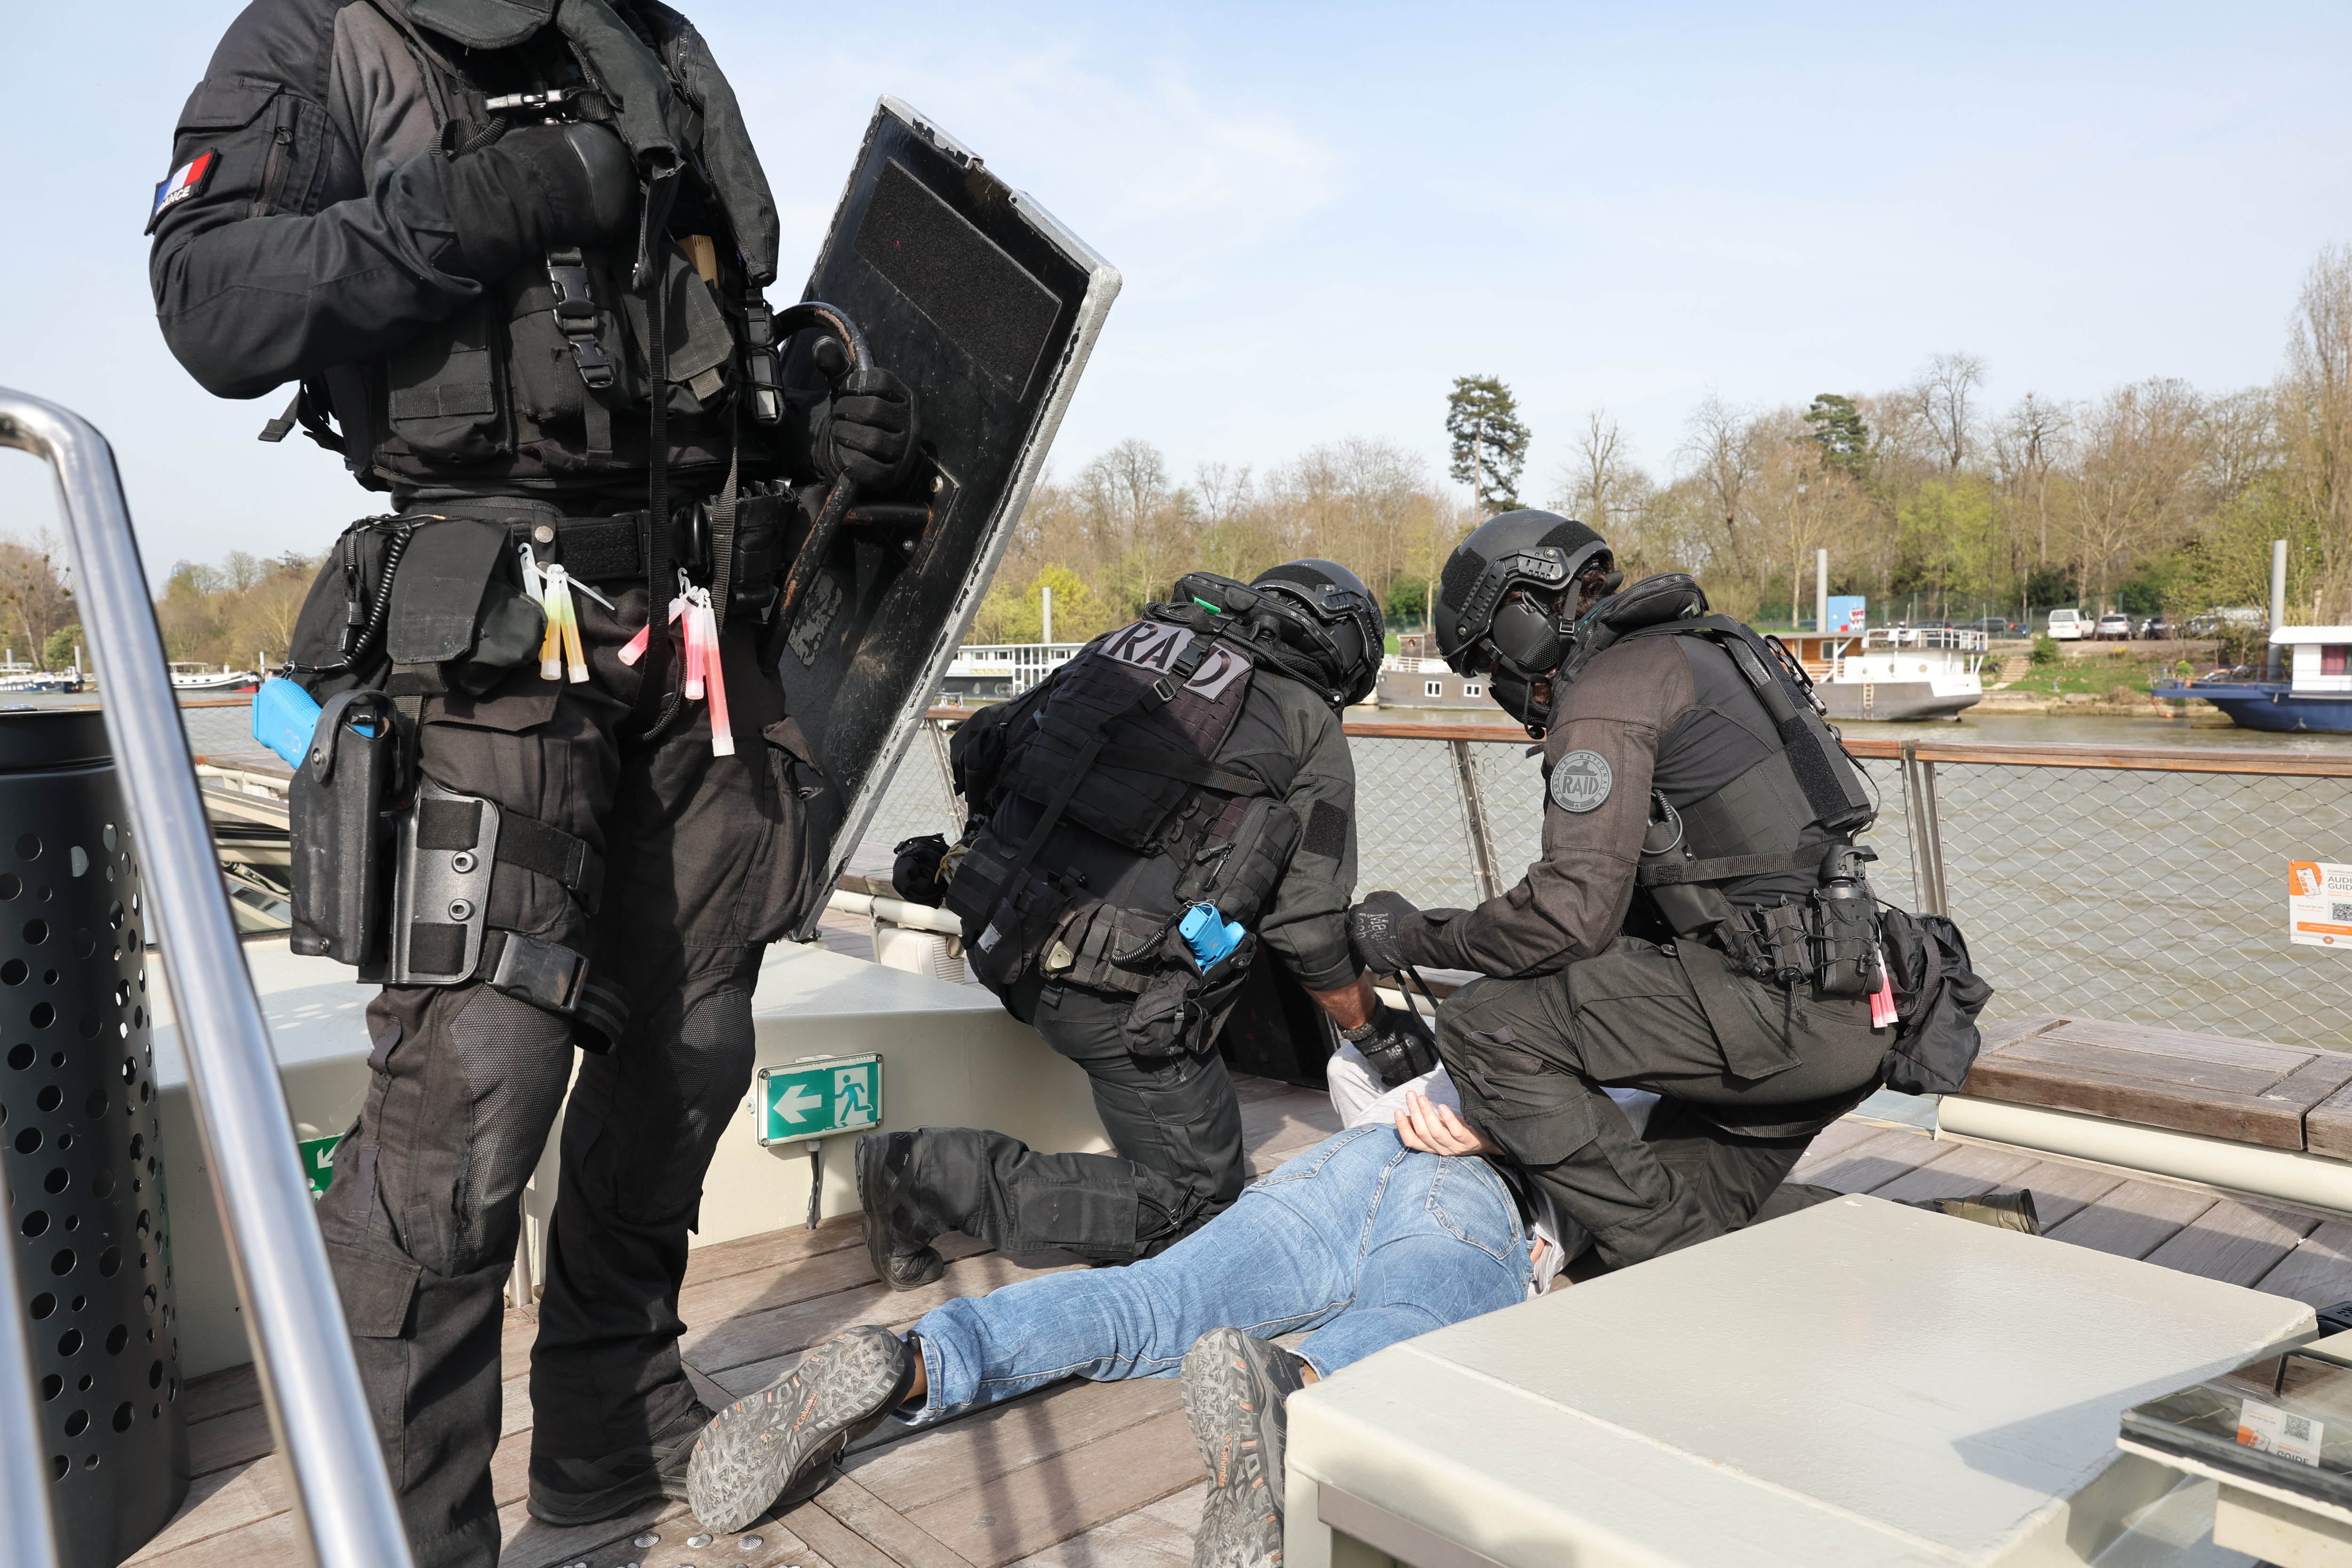 Des policiers du Raid immobilisent un homme dans le cadre de leur exercice sur la Seine, organisé jeudi après-midi. LP/Arnaud Journois